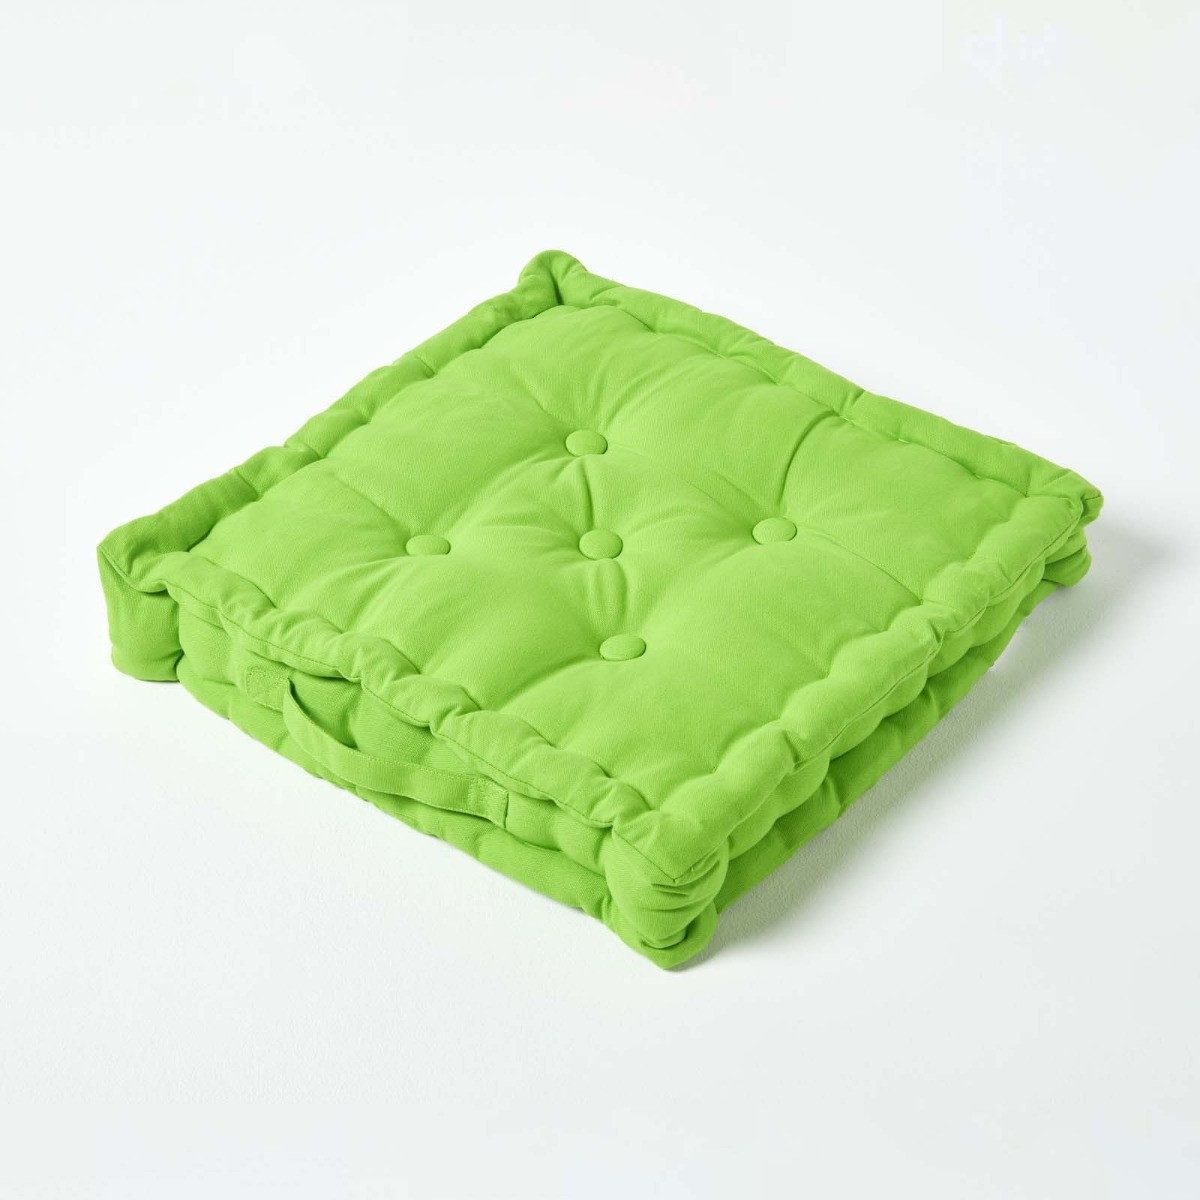 Homescapes Bodenkissen Sitzkissen unifarben grün 50 x 50 cm